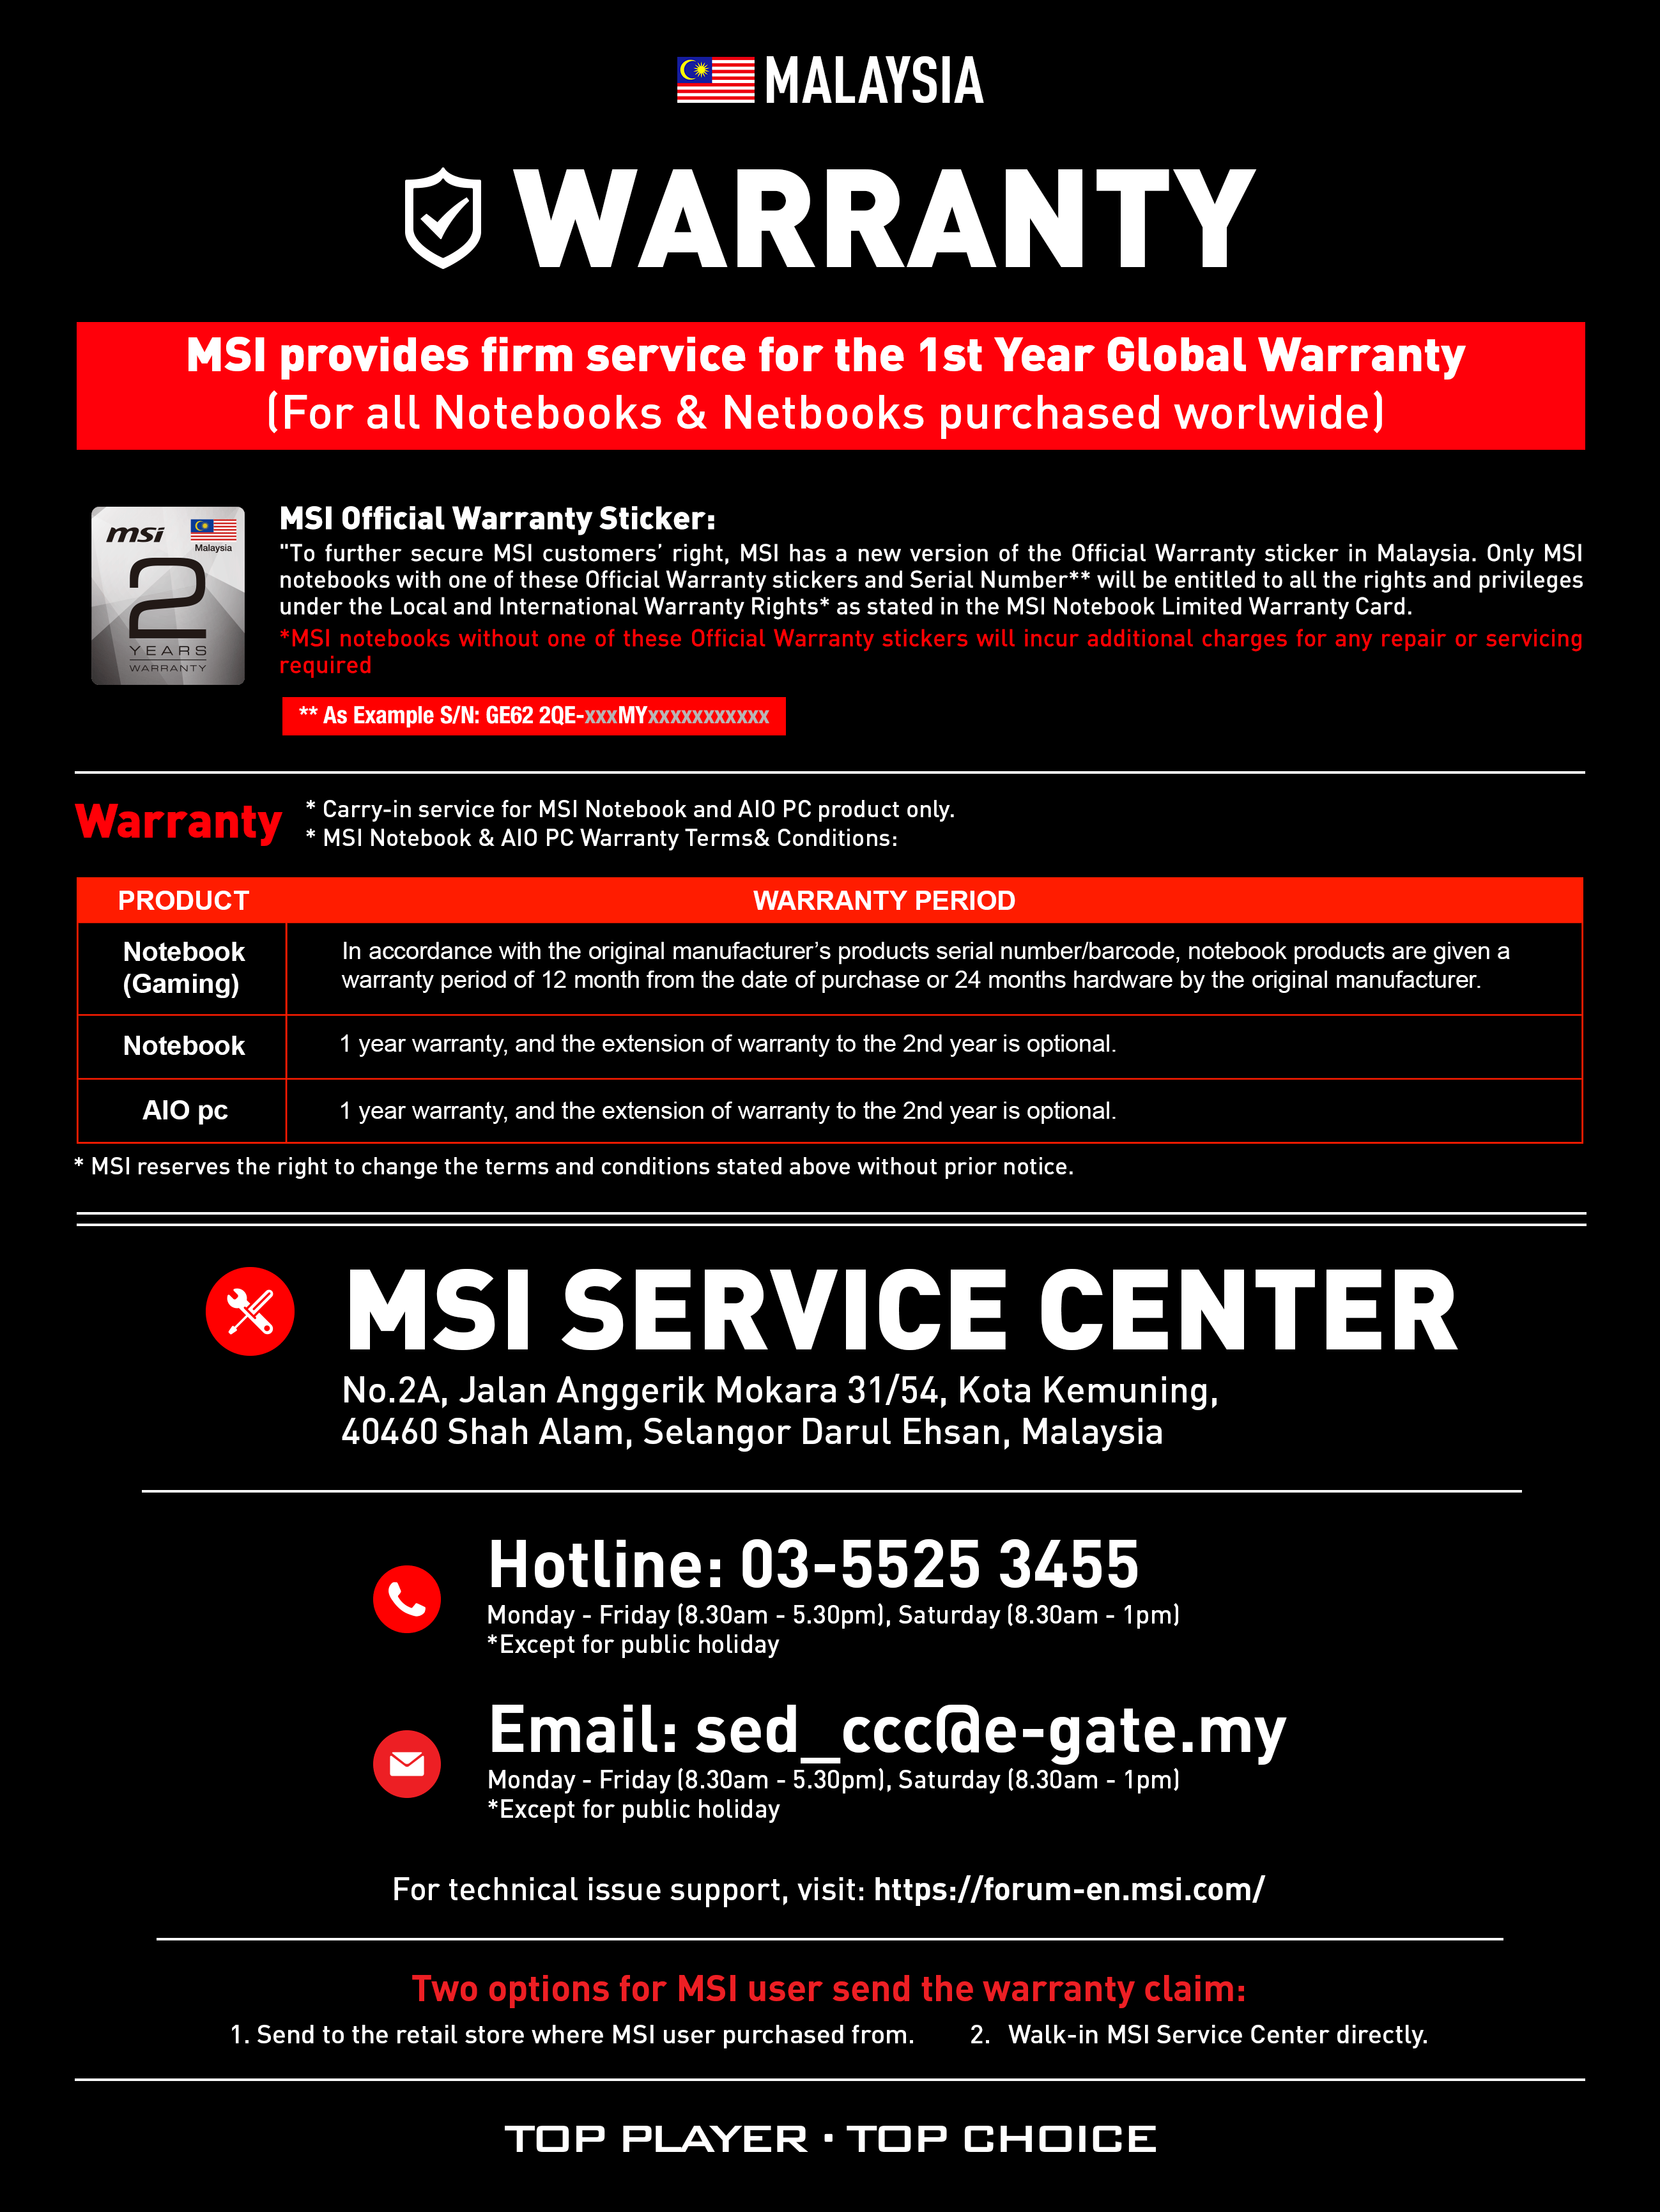 msi canada service center